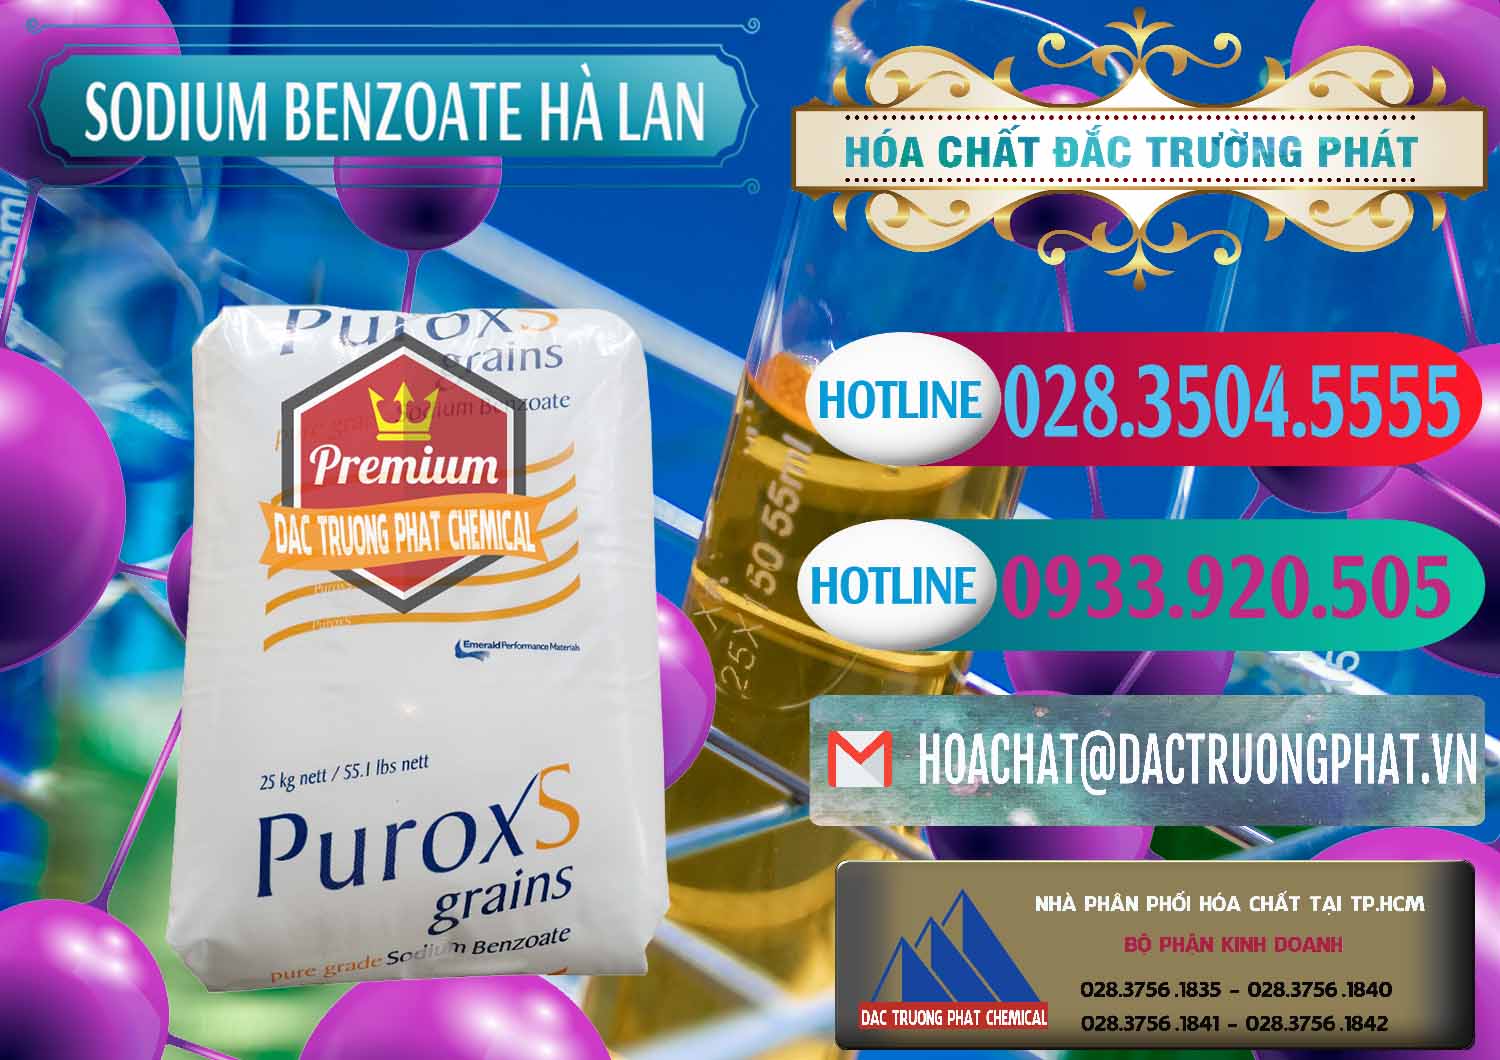 Cung cấp ( bán ) Sodium Benzoate - Mốc Bột Puroxs Hà Lan Netherlands - 0467 - Cty chuyên nhập khẩu & phân phối hóa chất tại TP.HCM - truongphat.vn